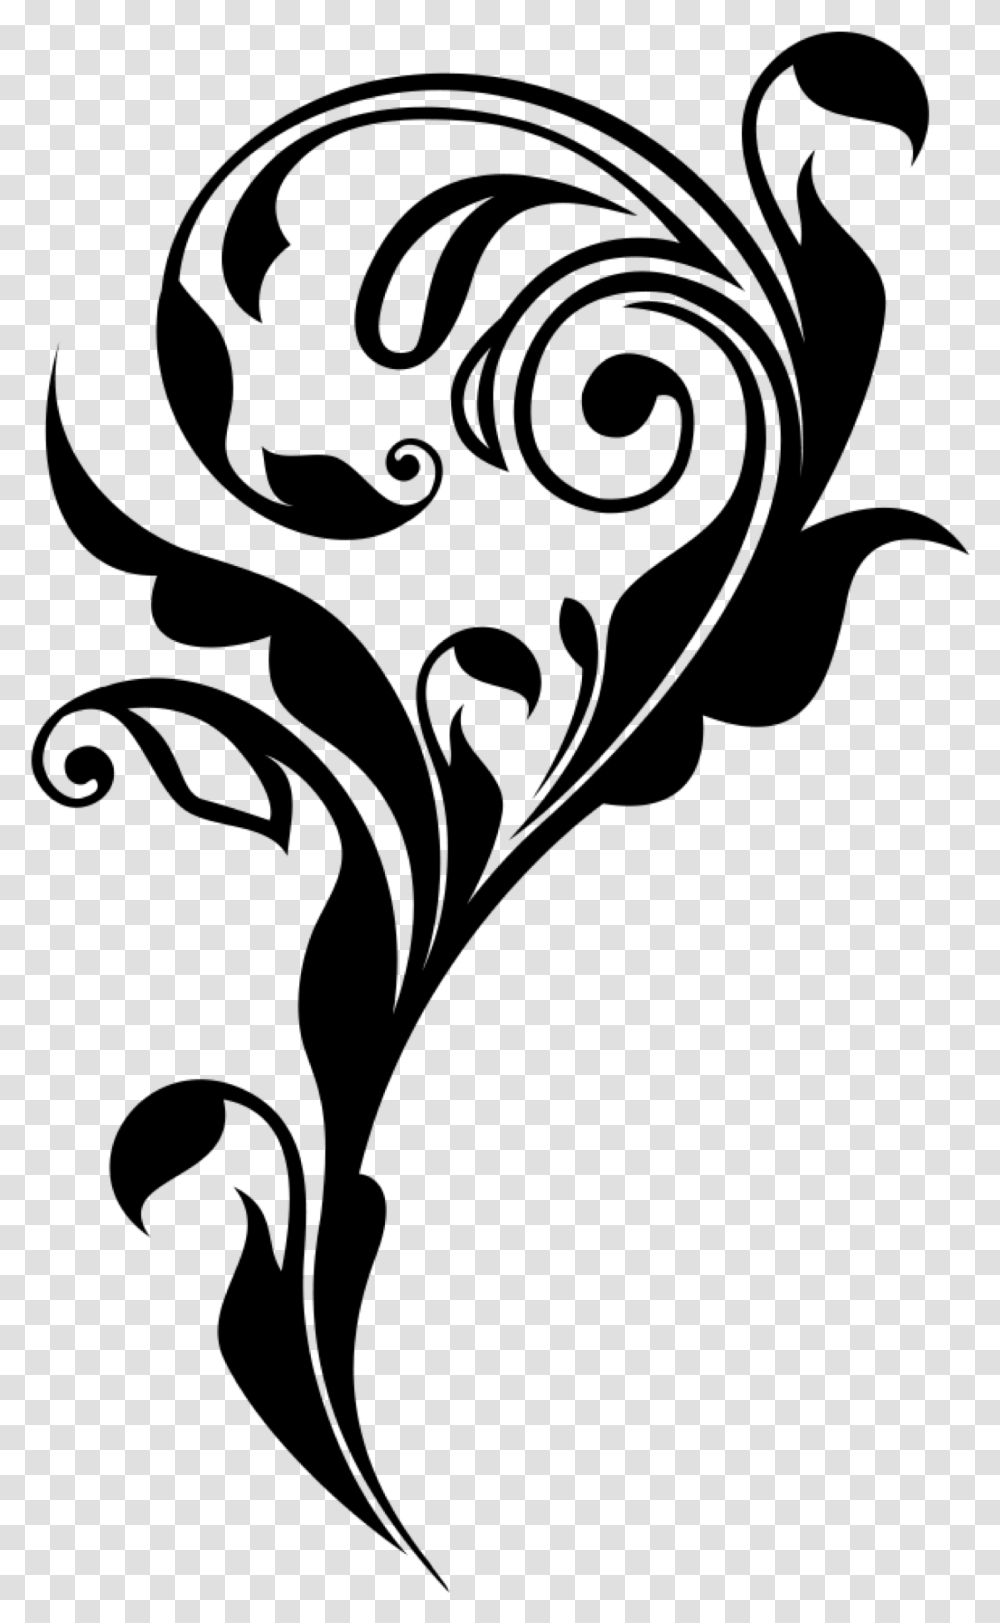 Flower Black Lines Underline White Overlay Filler Art, Gray, World Of Warcraft Transparent Png